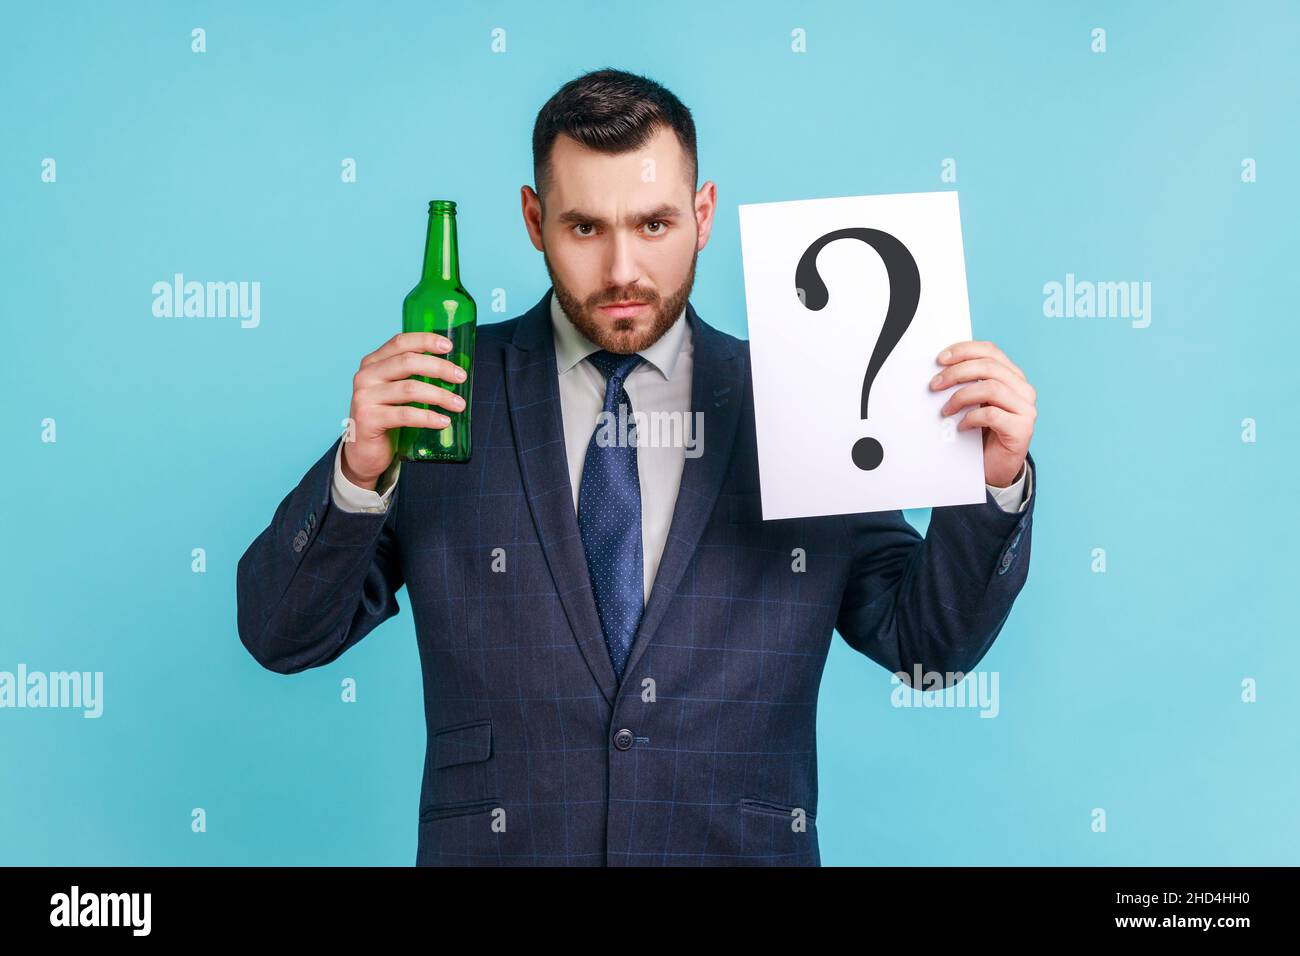 Trinken oder nicht. Porträt eines ernsthaften Mannes mit Bart, der einen dunklen Anzug im offiziellen Stil trägt, der eine Flasche mit Alkohol und Papier mit Fragezeichen hält. Innenaufnahme des Studios isoliert auf blauem Hintergrund. Stockfoto